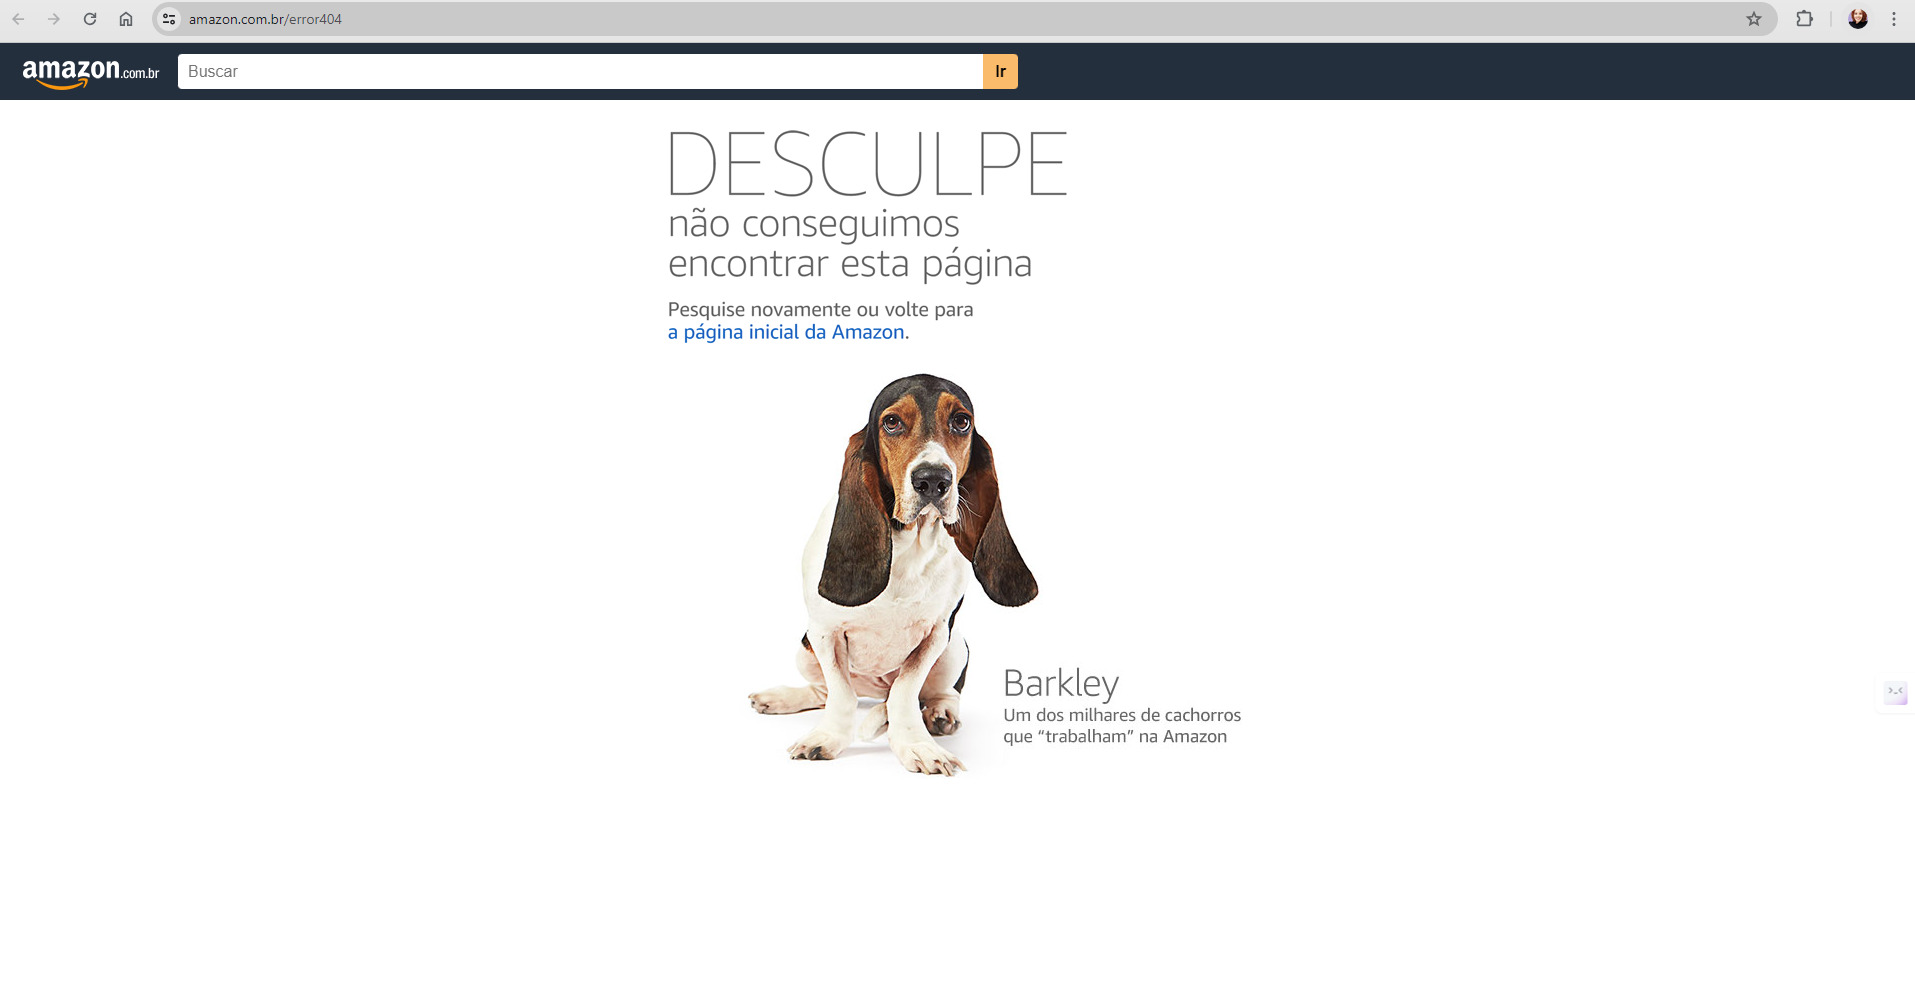 Tela de mensagem de erro da Amazon que apresenta uma mensagem de desculpas acima, assim como convite para pessoa retornar a página inicial da Amazon, assim como imagem de cachorro abaixo e nome dele.